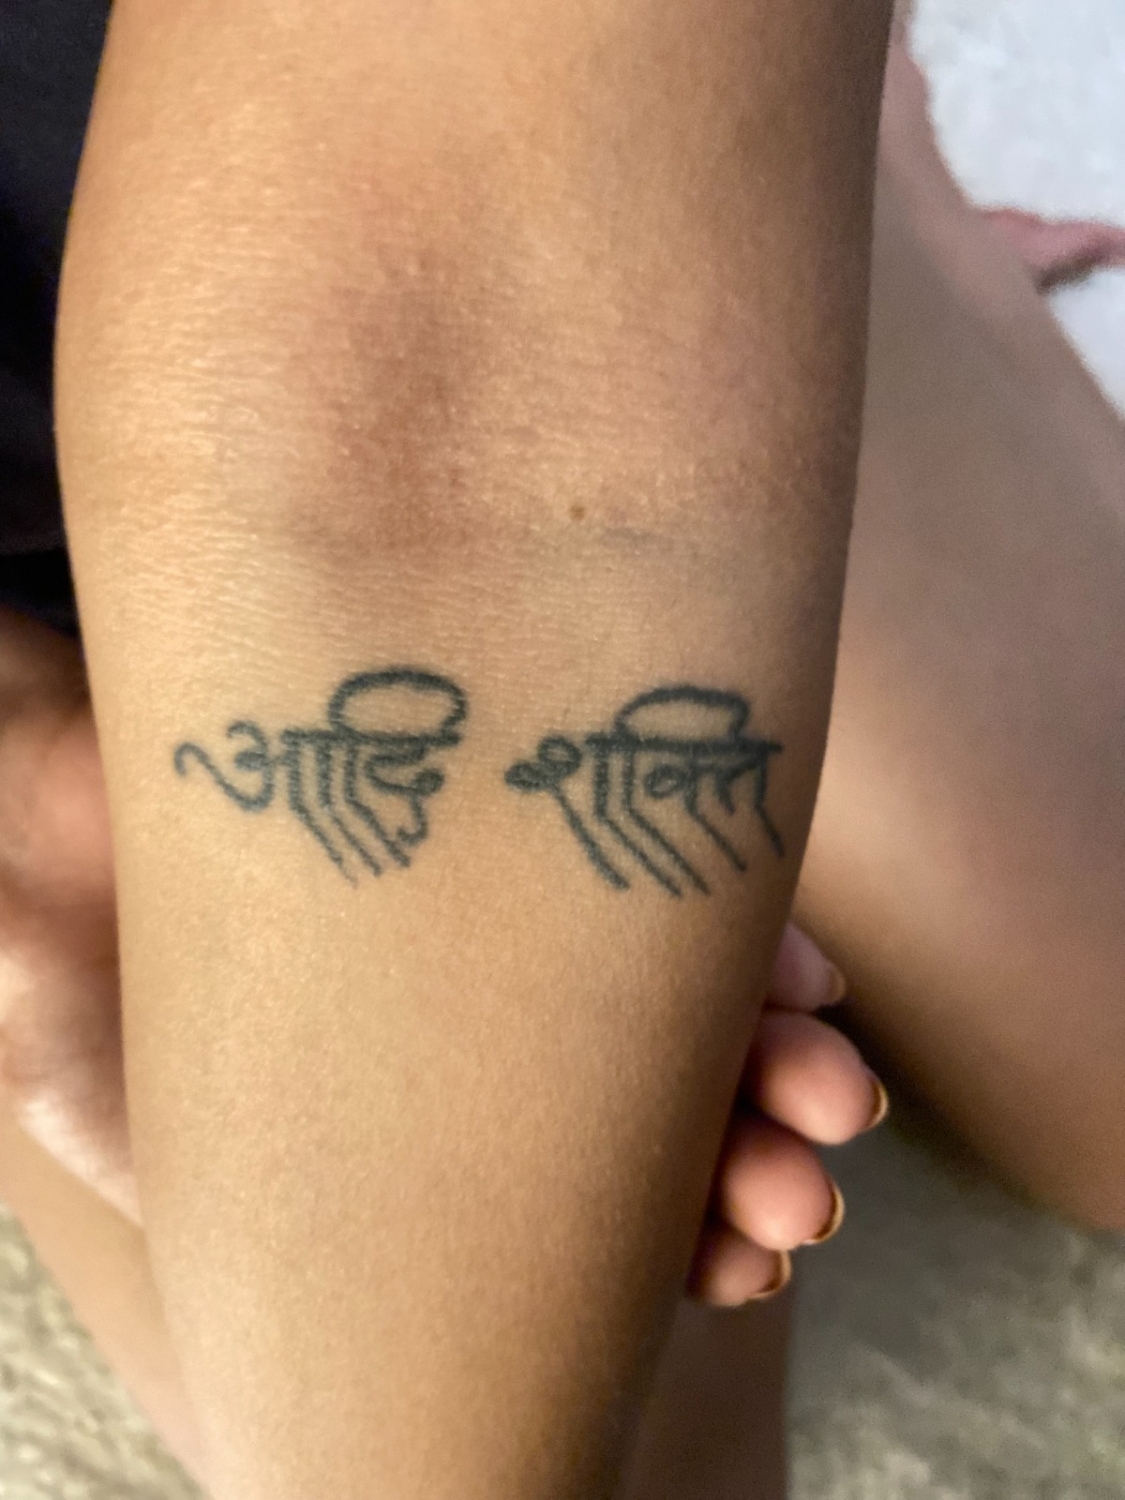 Kingsman tattoo  art studio on X Shiva tattoo with mandala  httpstcoW41QyuWC37  X